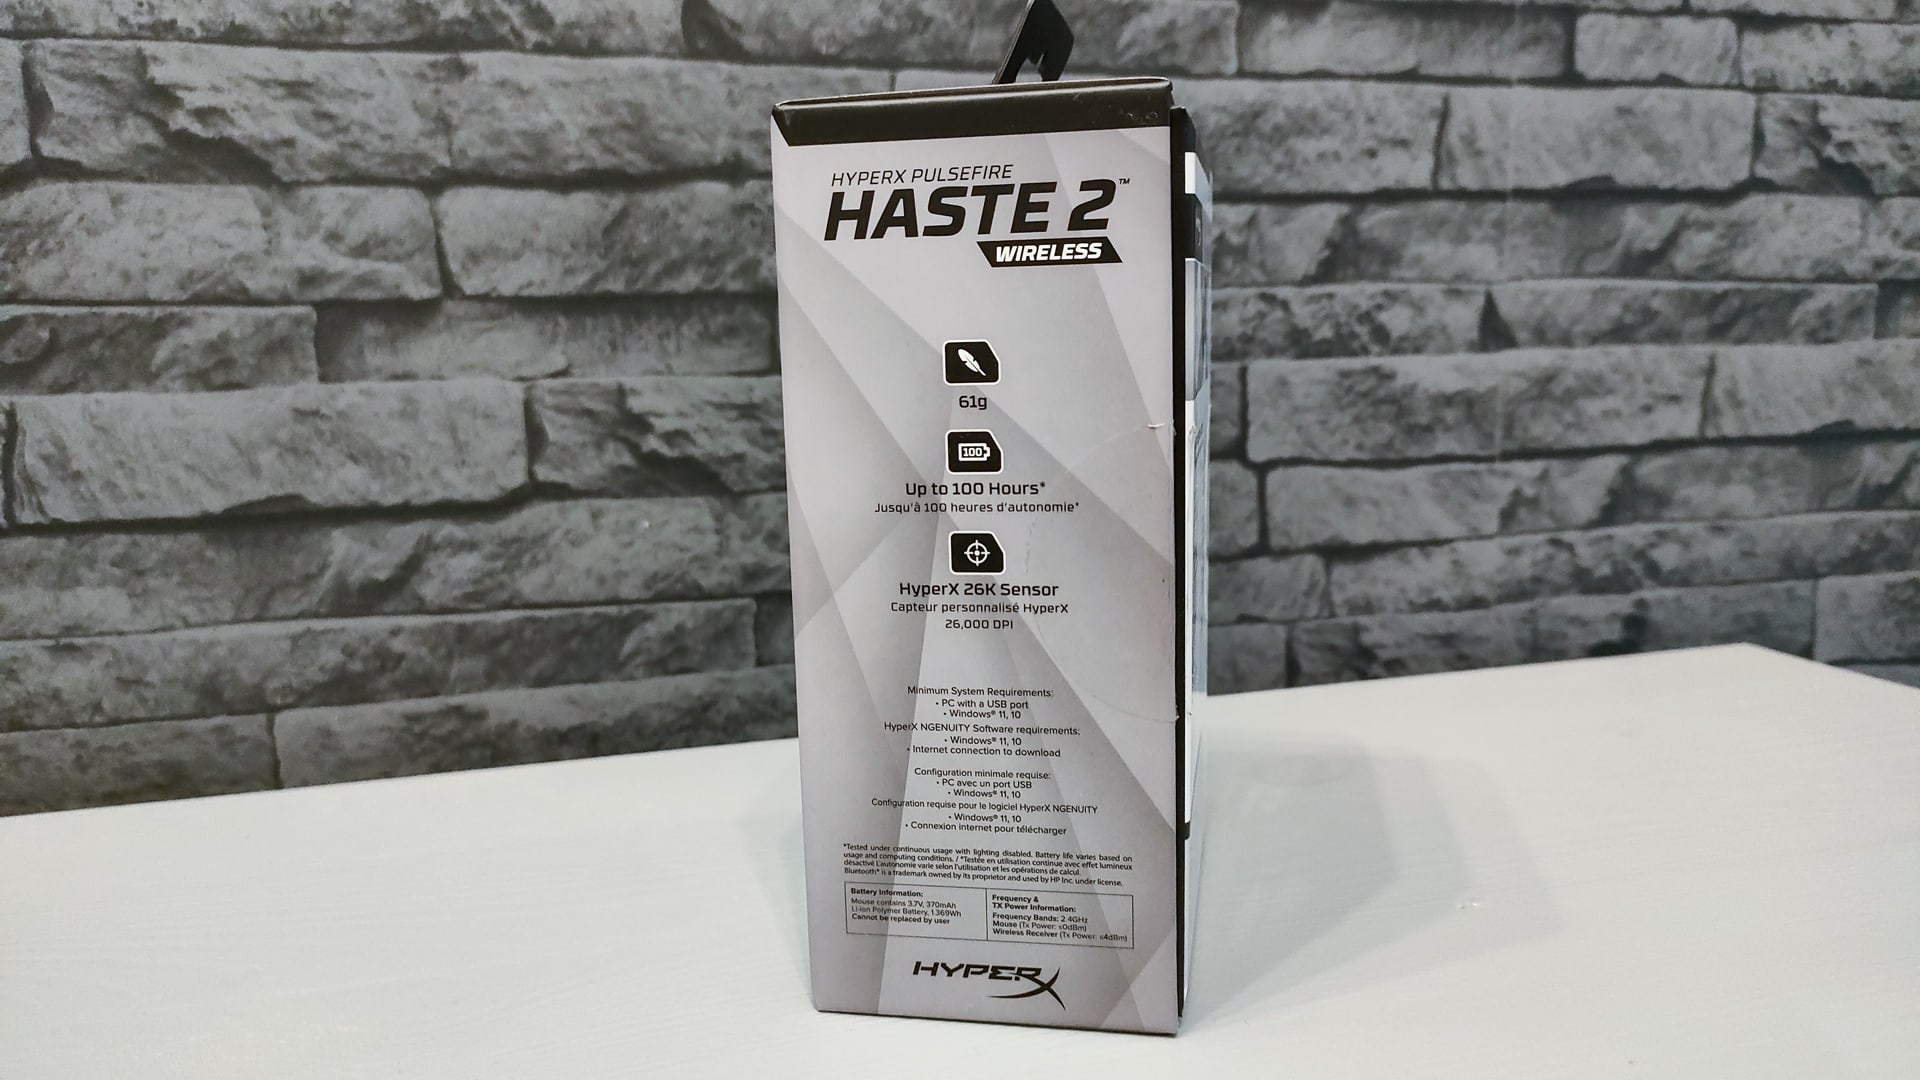 HyperX Pulsefire Haste 2 Wireless